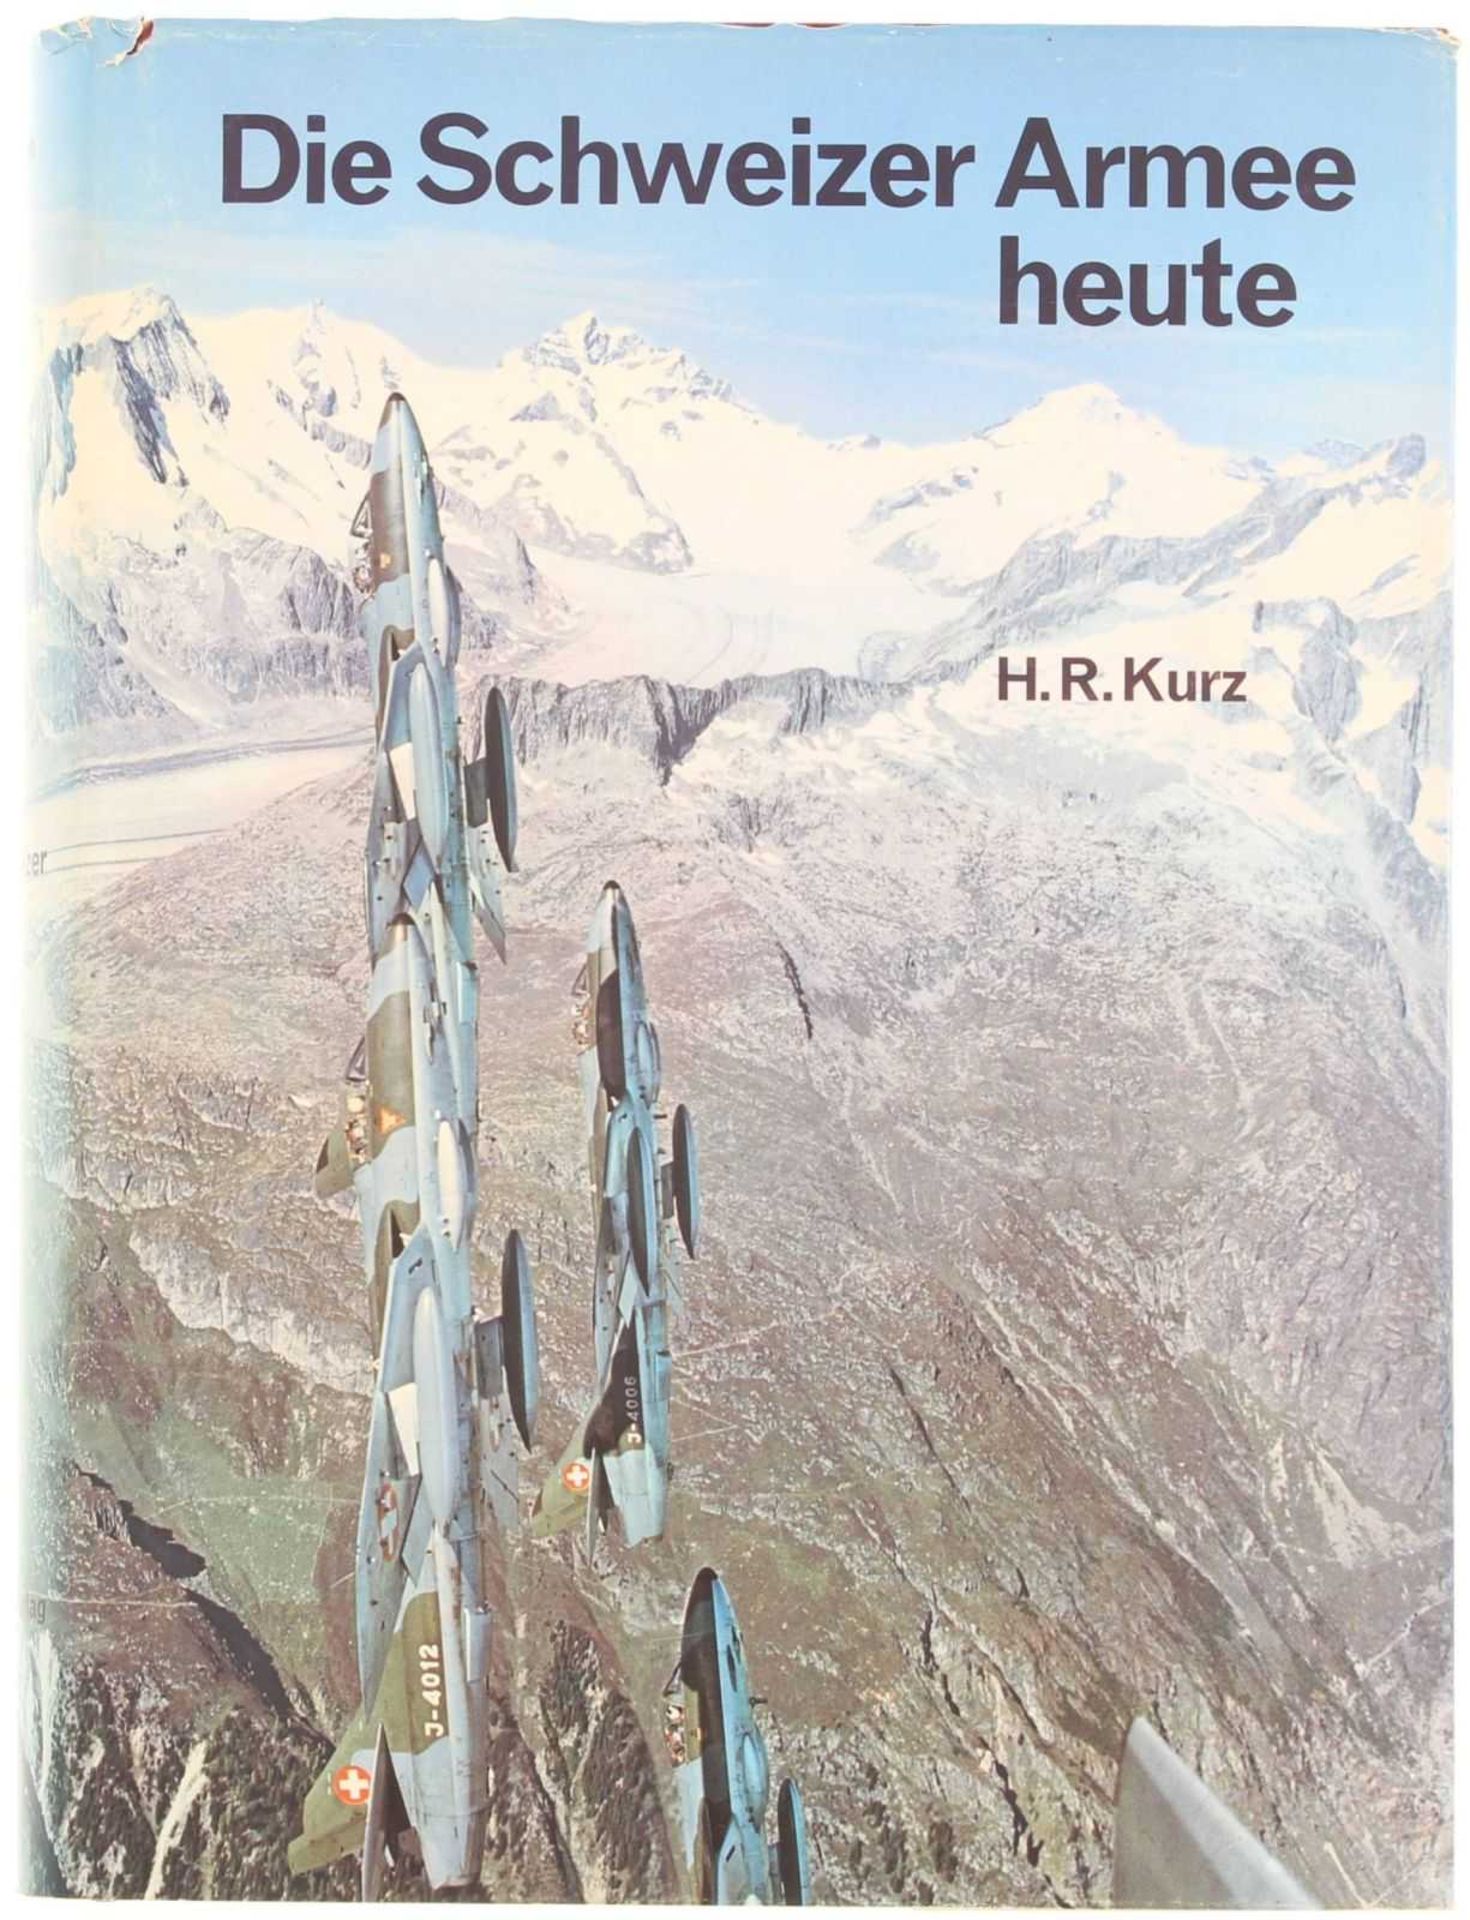 Die Schweizer Armee heute, Ott Verlag Thun 1971 das aktuelle Standardwerk über die Schweiz in Wehr